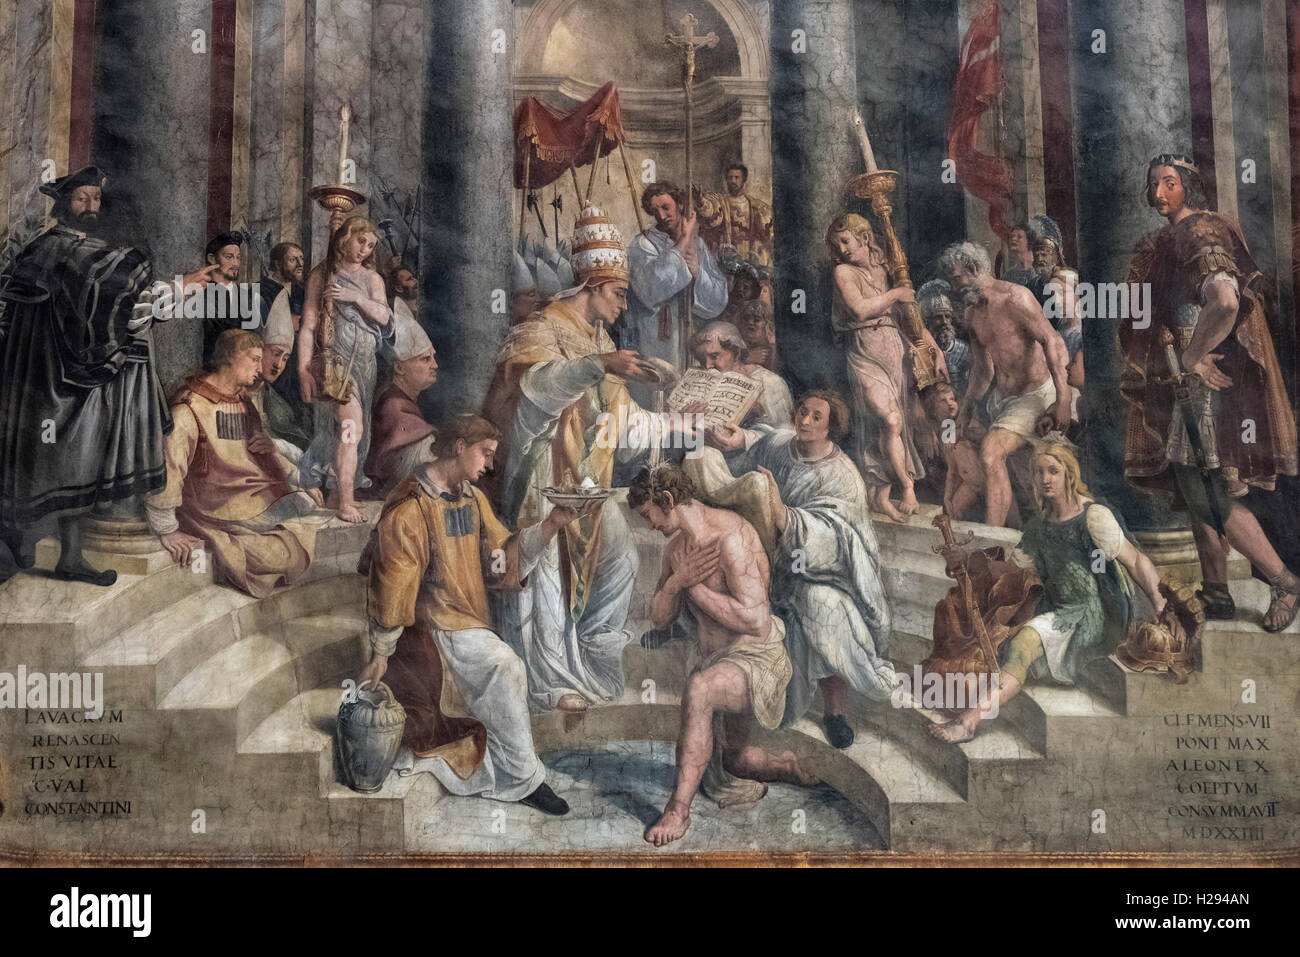 Rome. L'Italie. Fresque (1517-1524) représentant le baptême de Constantin (détail), Hall de Constantine, Musées du Vatican. Banque D'Images